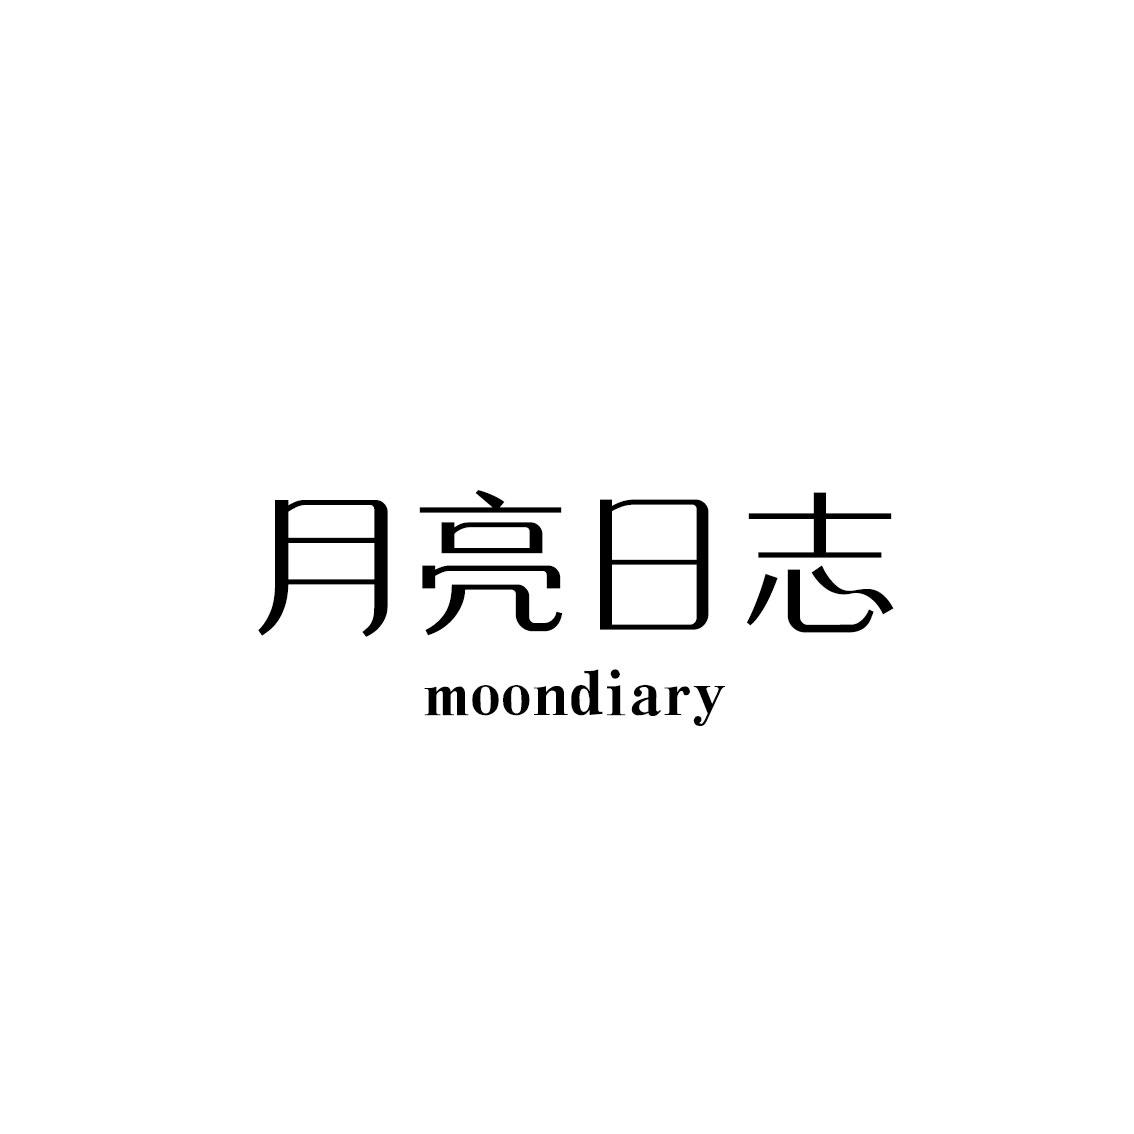 月亮日志 MOONDIARY